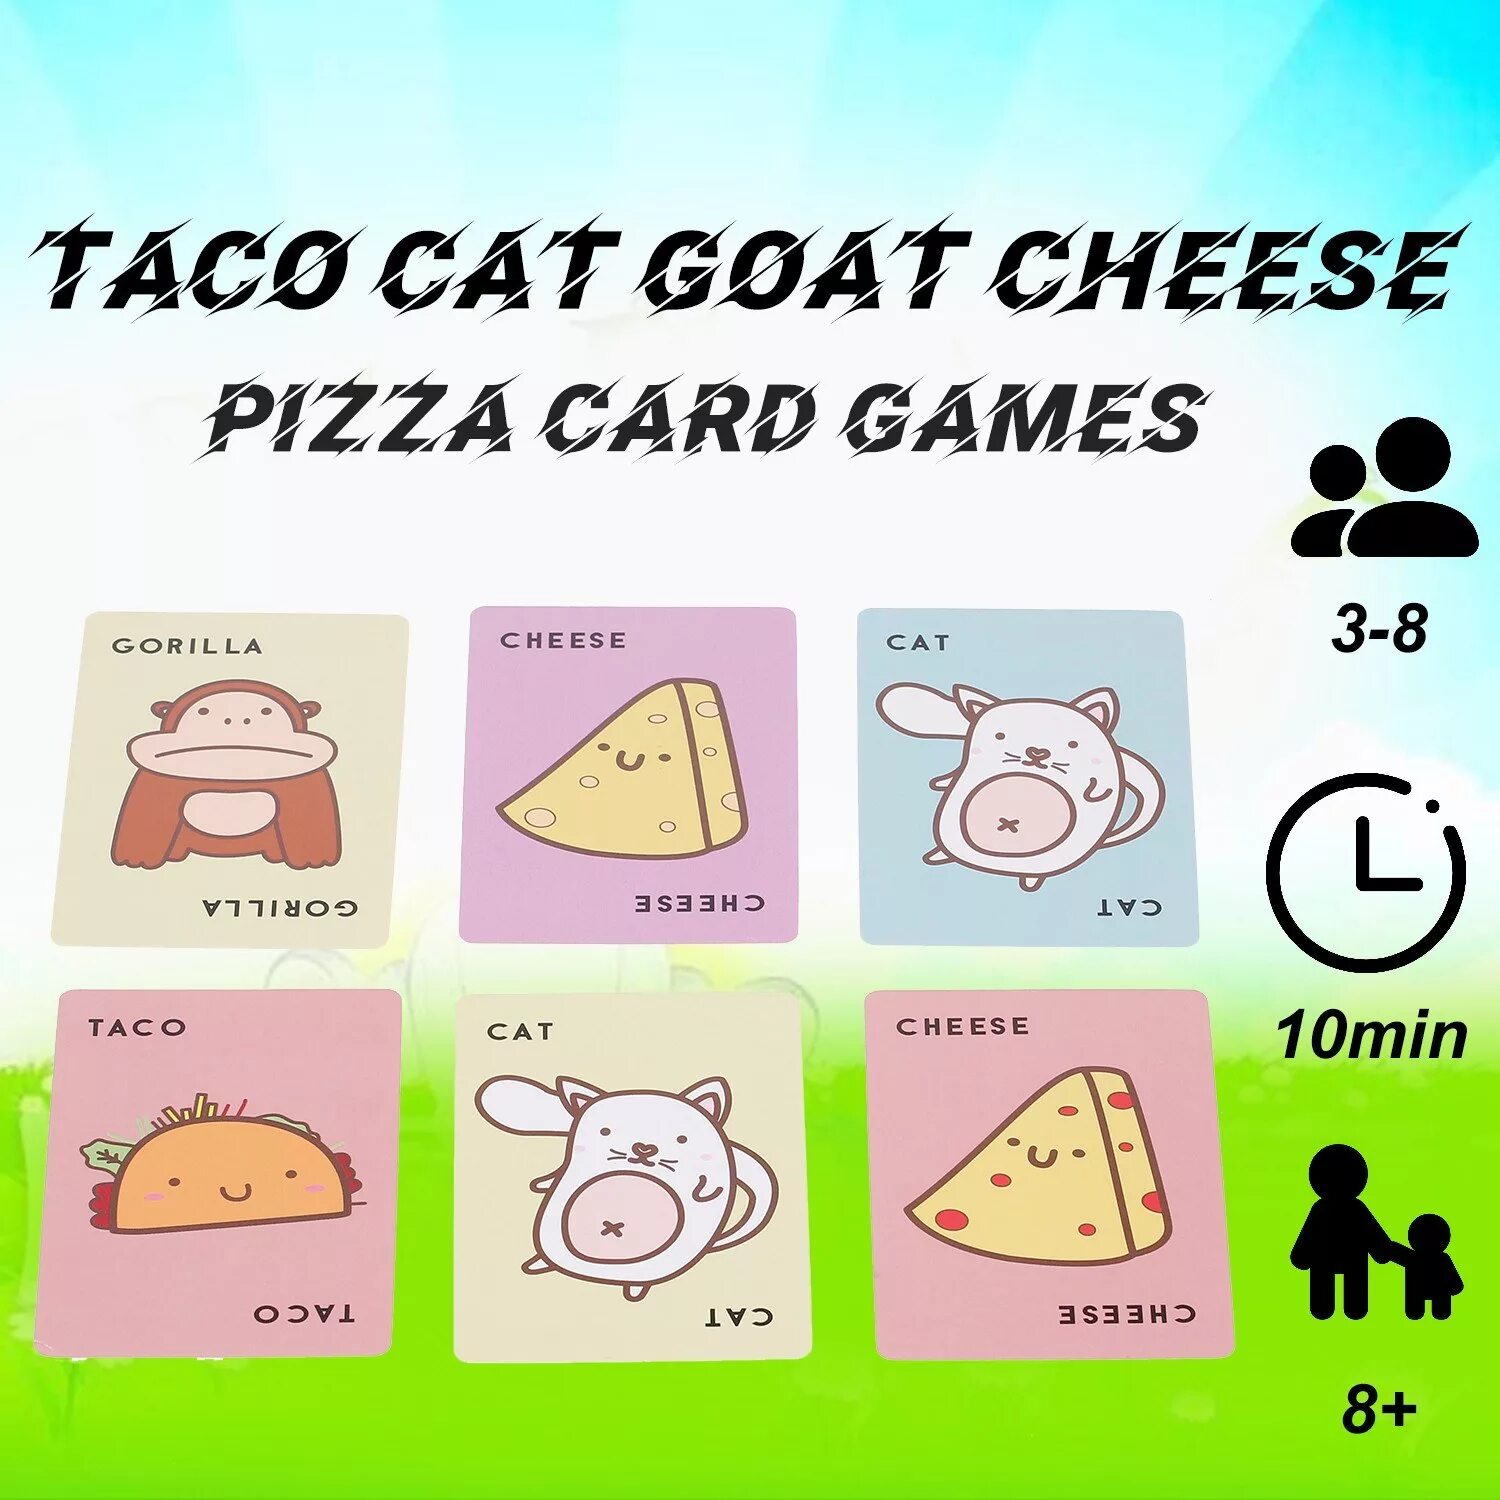 Тако пицца коза. Тако кот коза сыр пицца. Игра кот коза сыр пицца. Cheese Card game. Pizza Card.